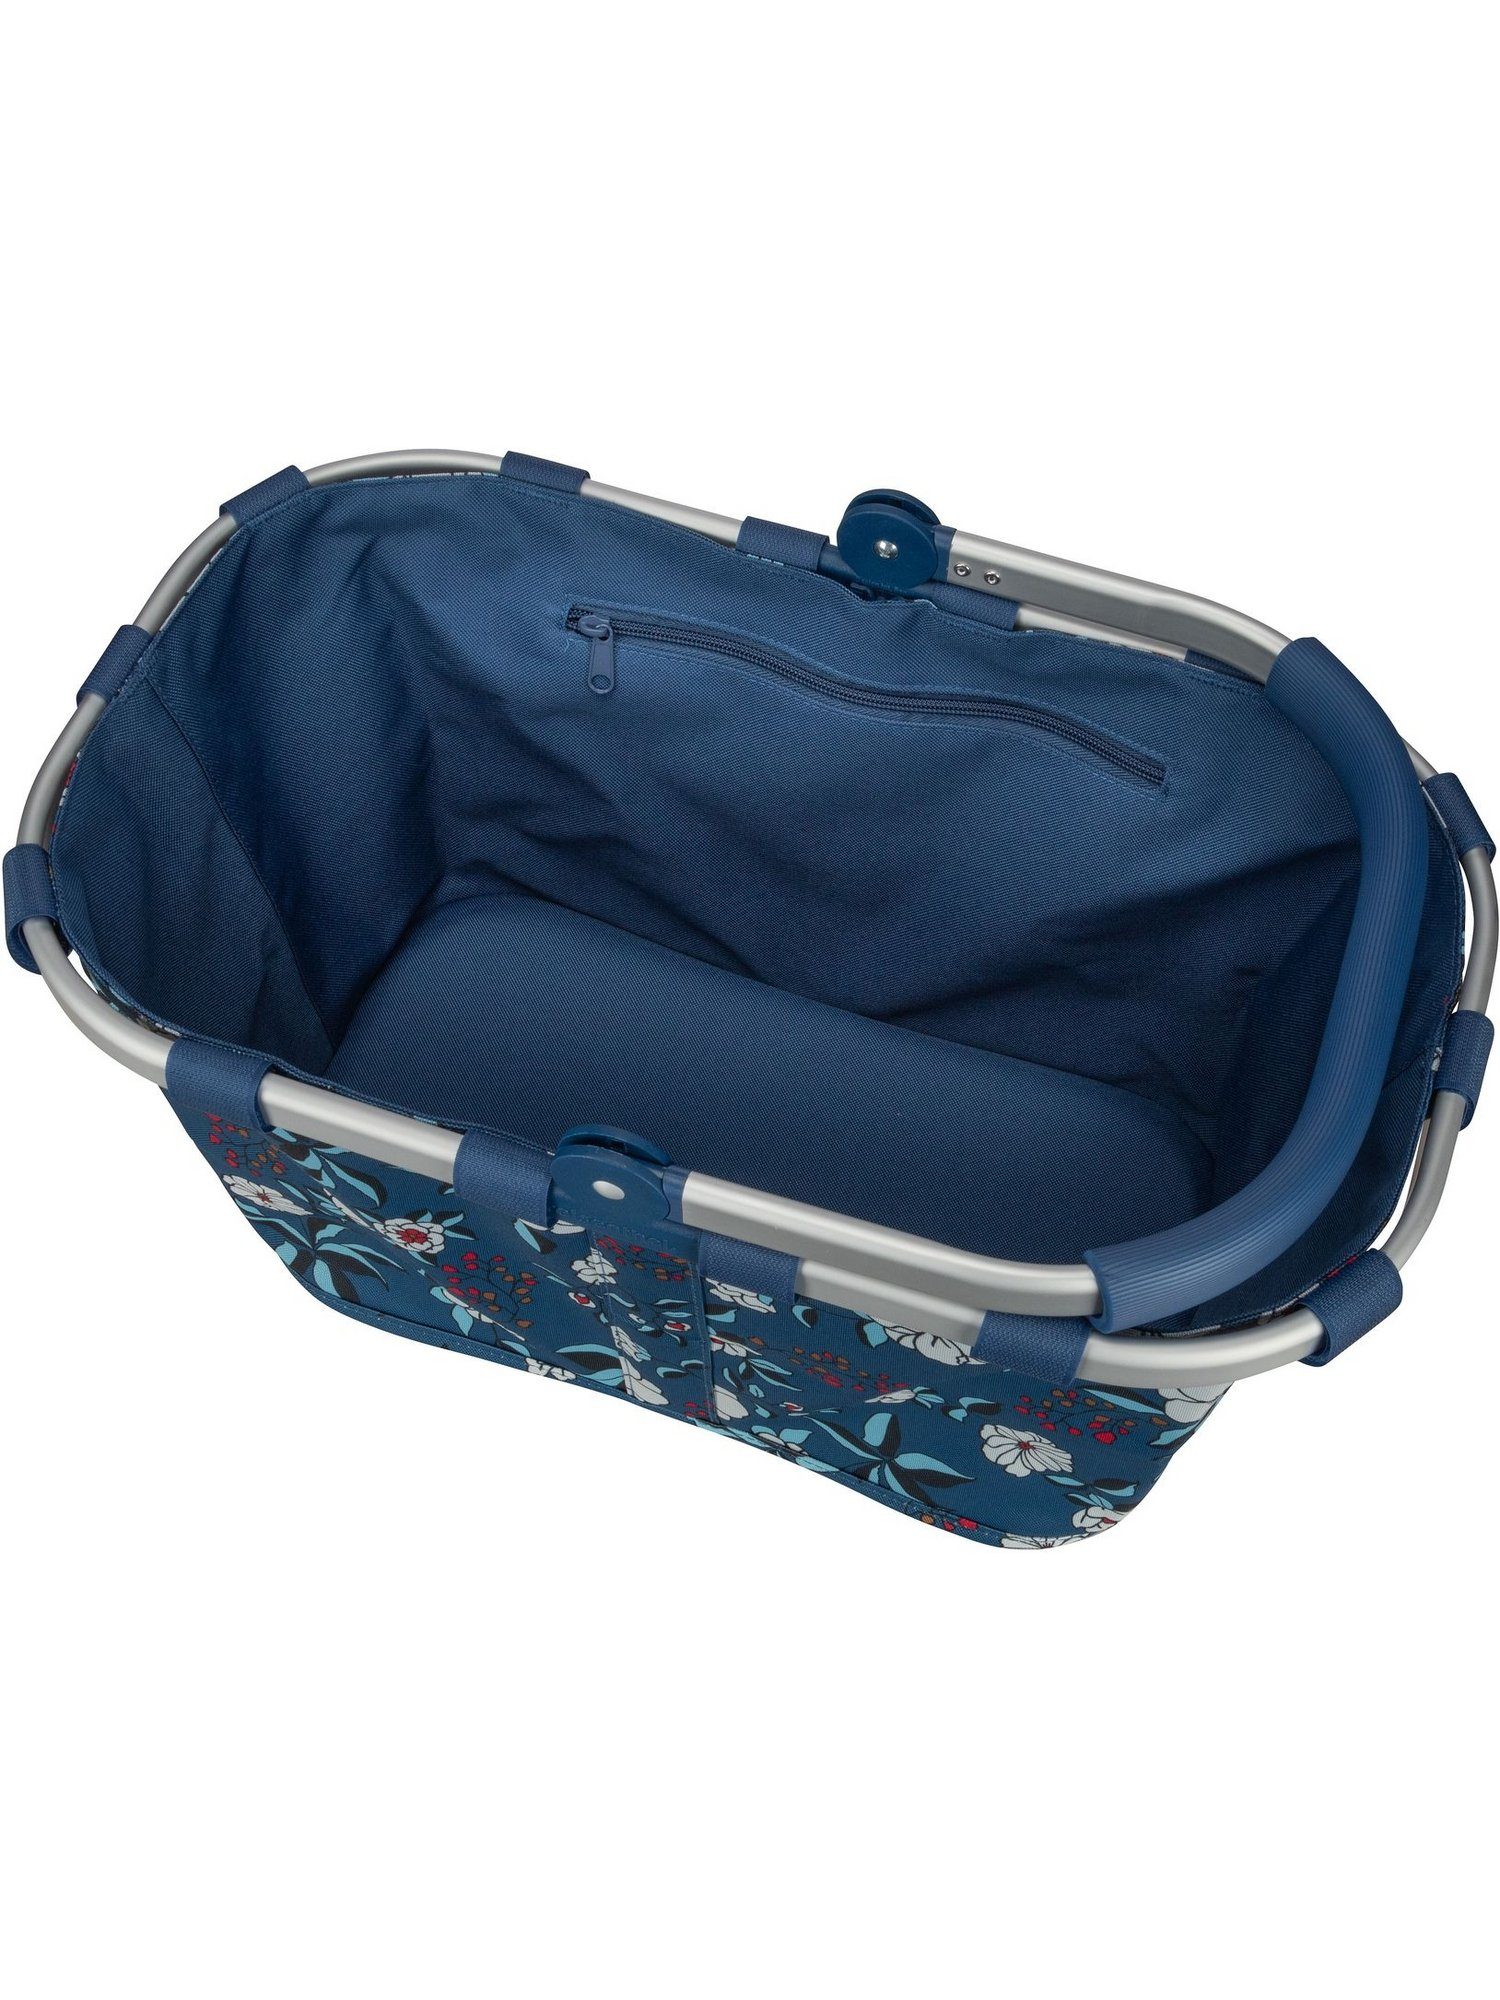 REISENTHEL® Einkaufsbeutel carrybag, 22 Blue l Garden